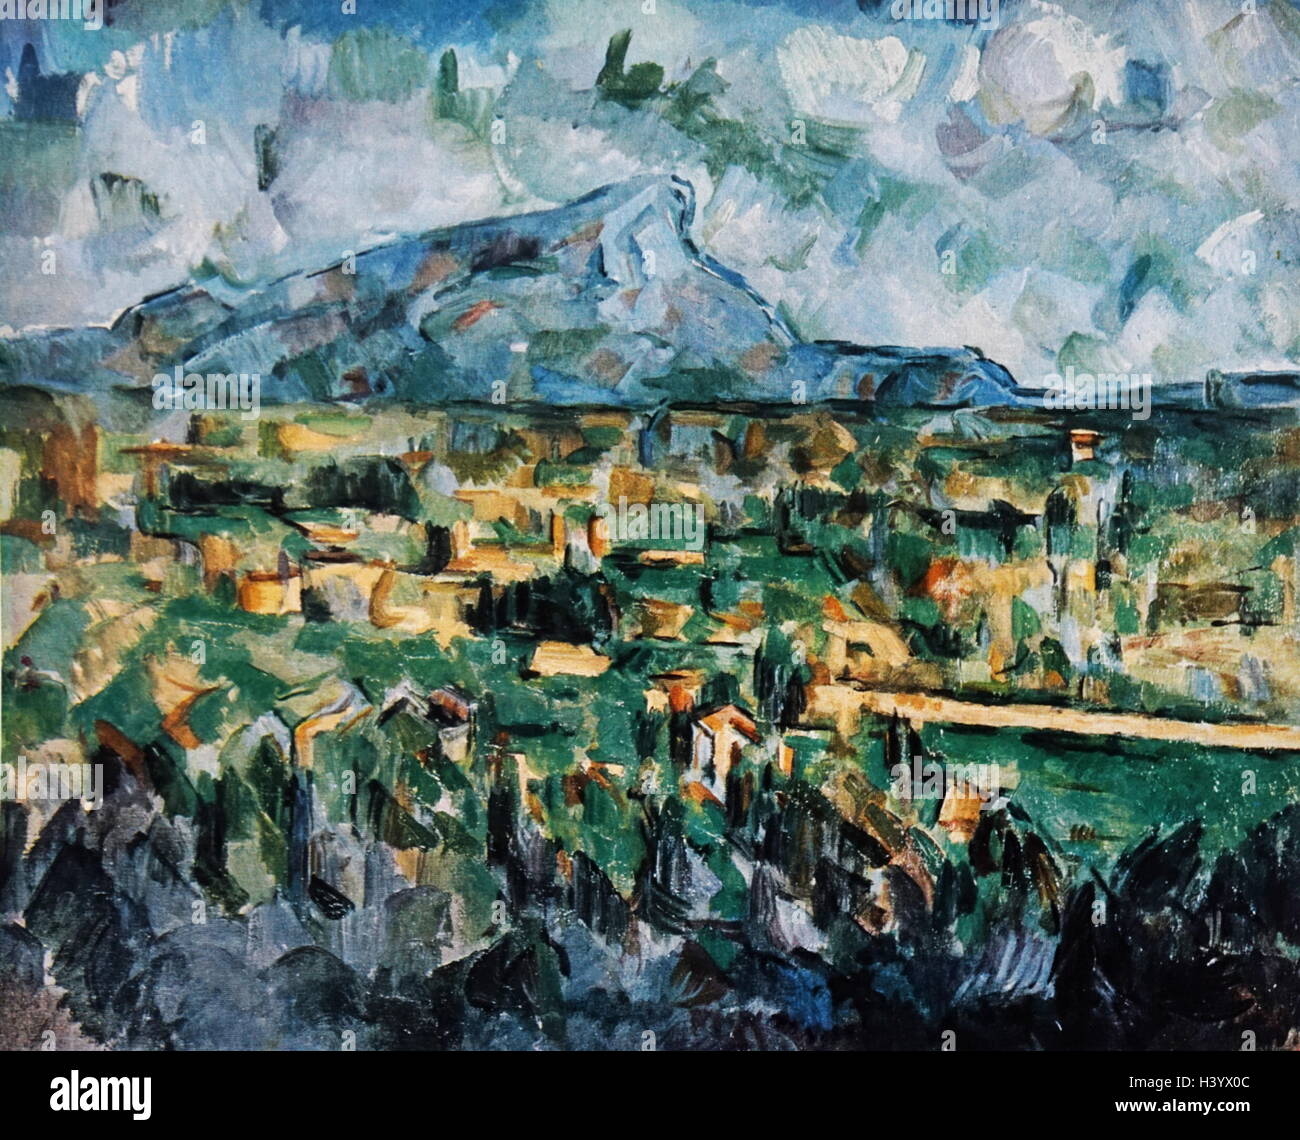 Gemälde mit dem Titel 'Mount Sainte Victorie' von Paul Cézanne (1839-1906), ein französischer Künstler und post-impressionistischen Maler. Vom 19. Jahrhundert Stockfoto